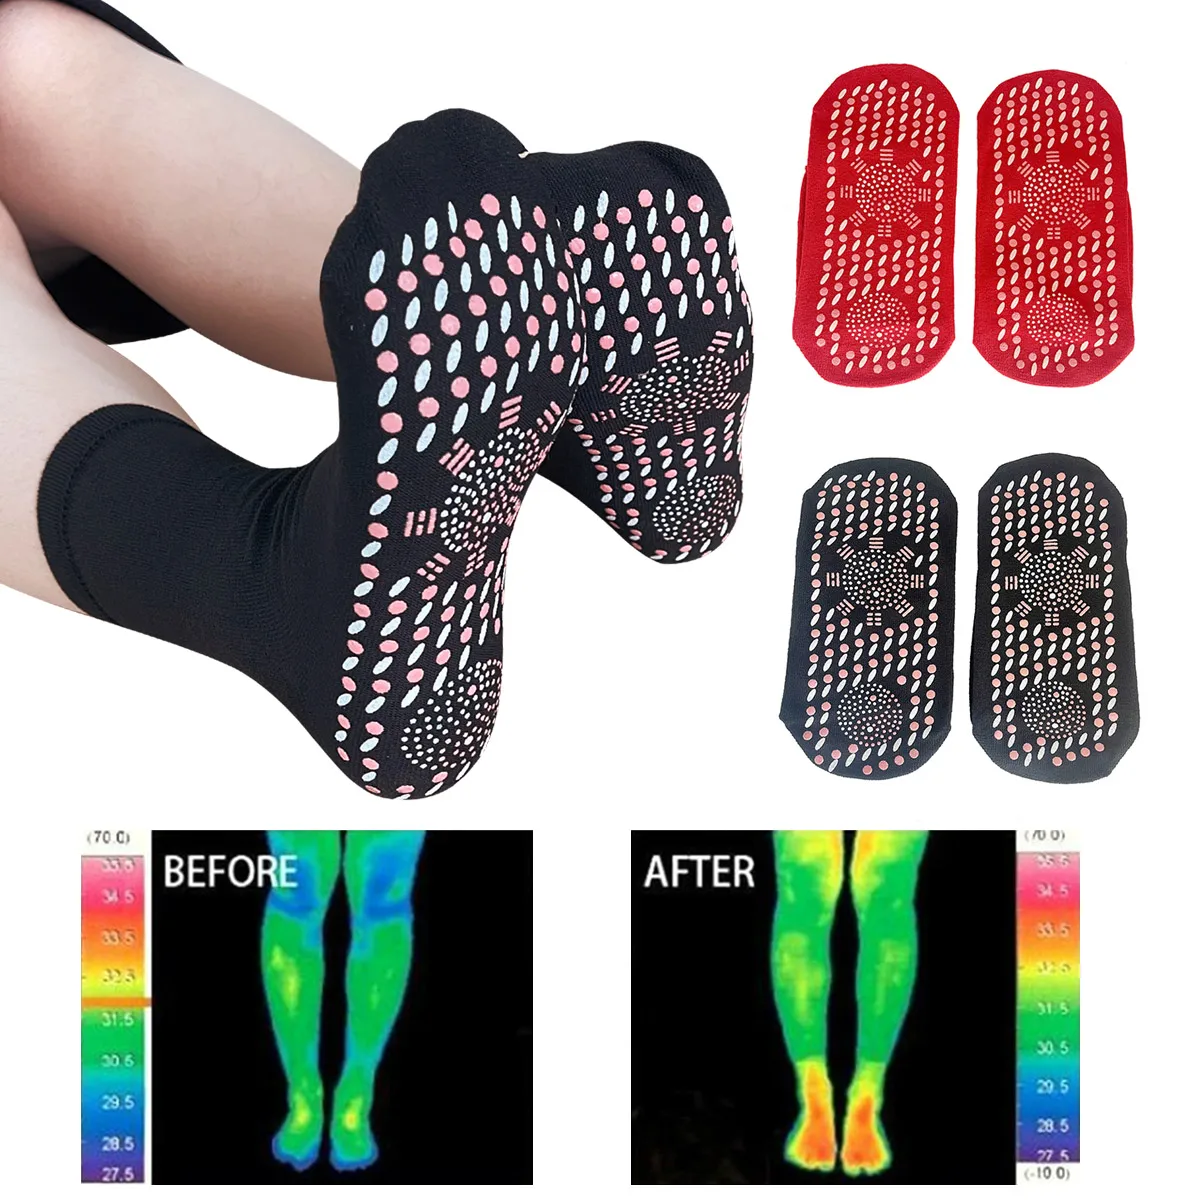 

Турмалиновые Носки для похудения 2 пары, Самонагревающиеся, Самонагревающиеся, термотерапевтические носки для массажа ног, Новинка